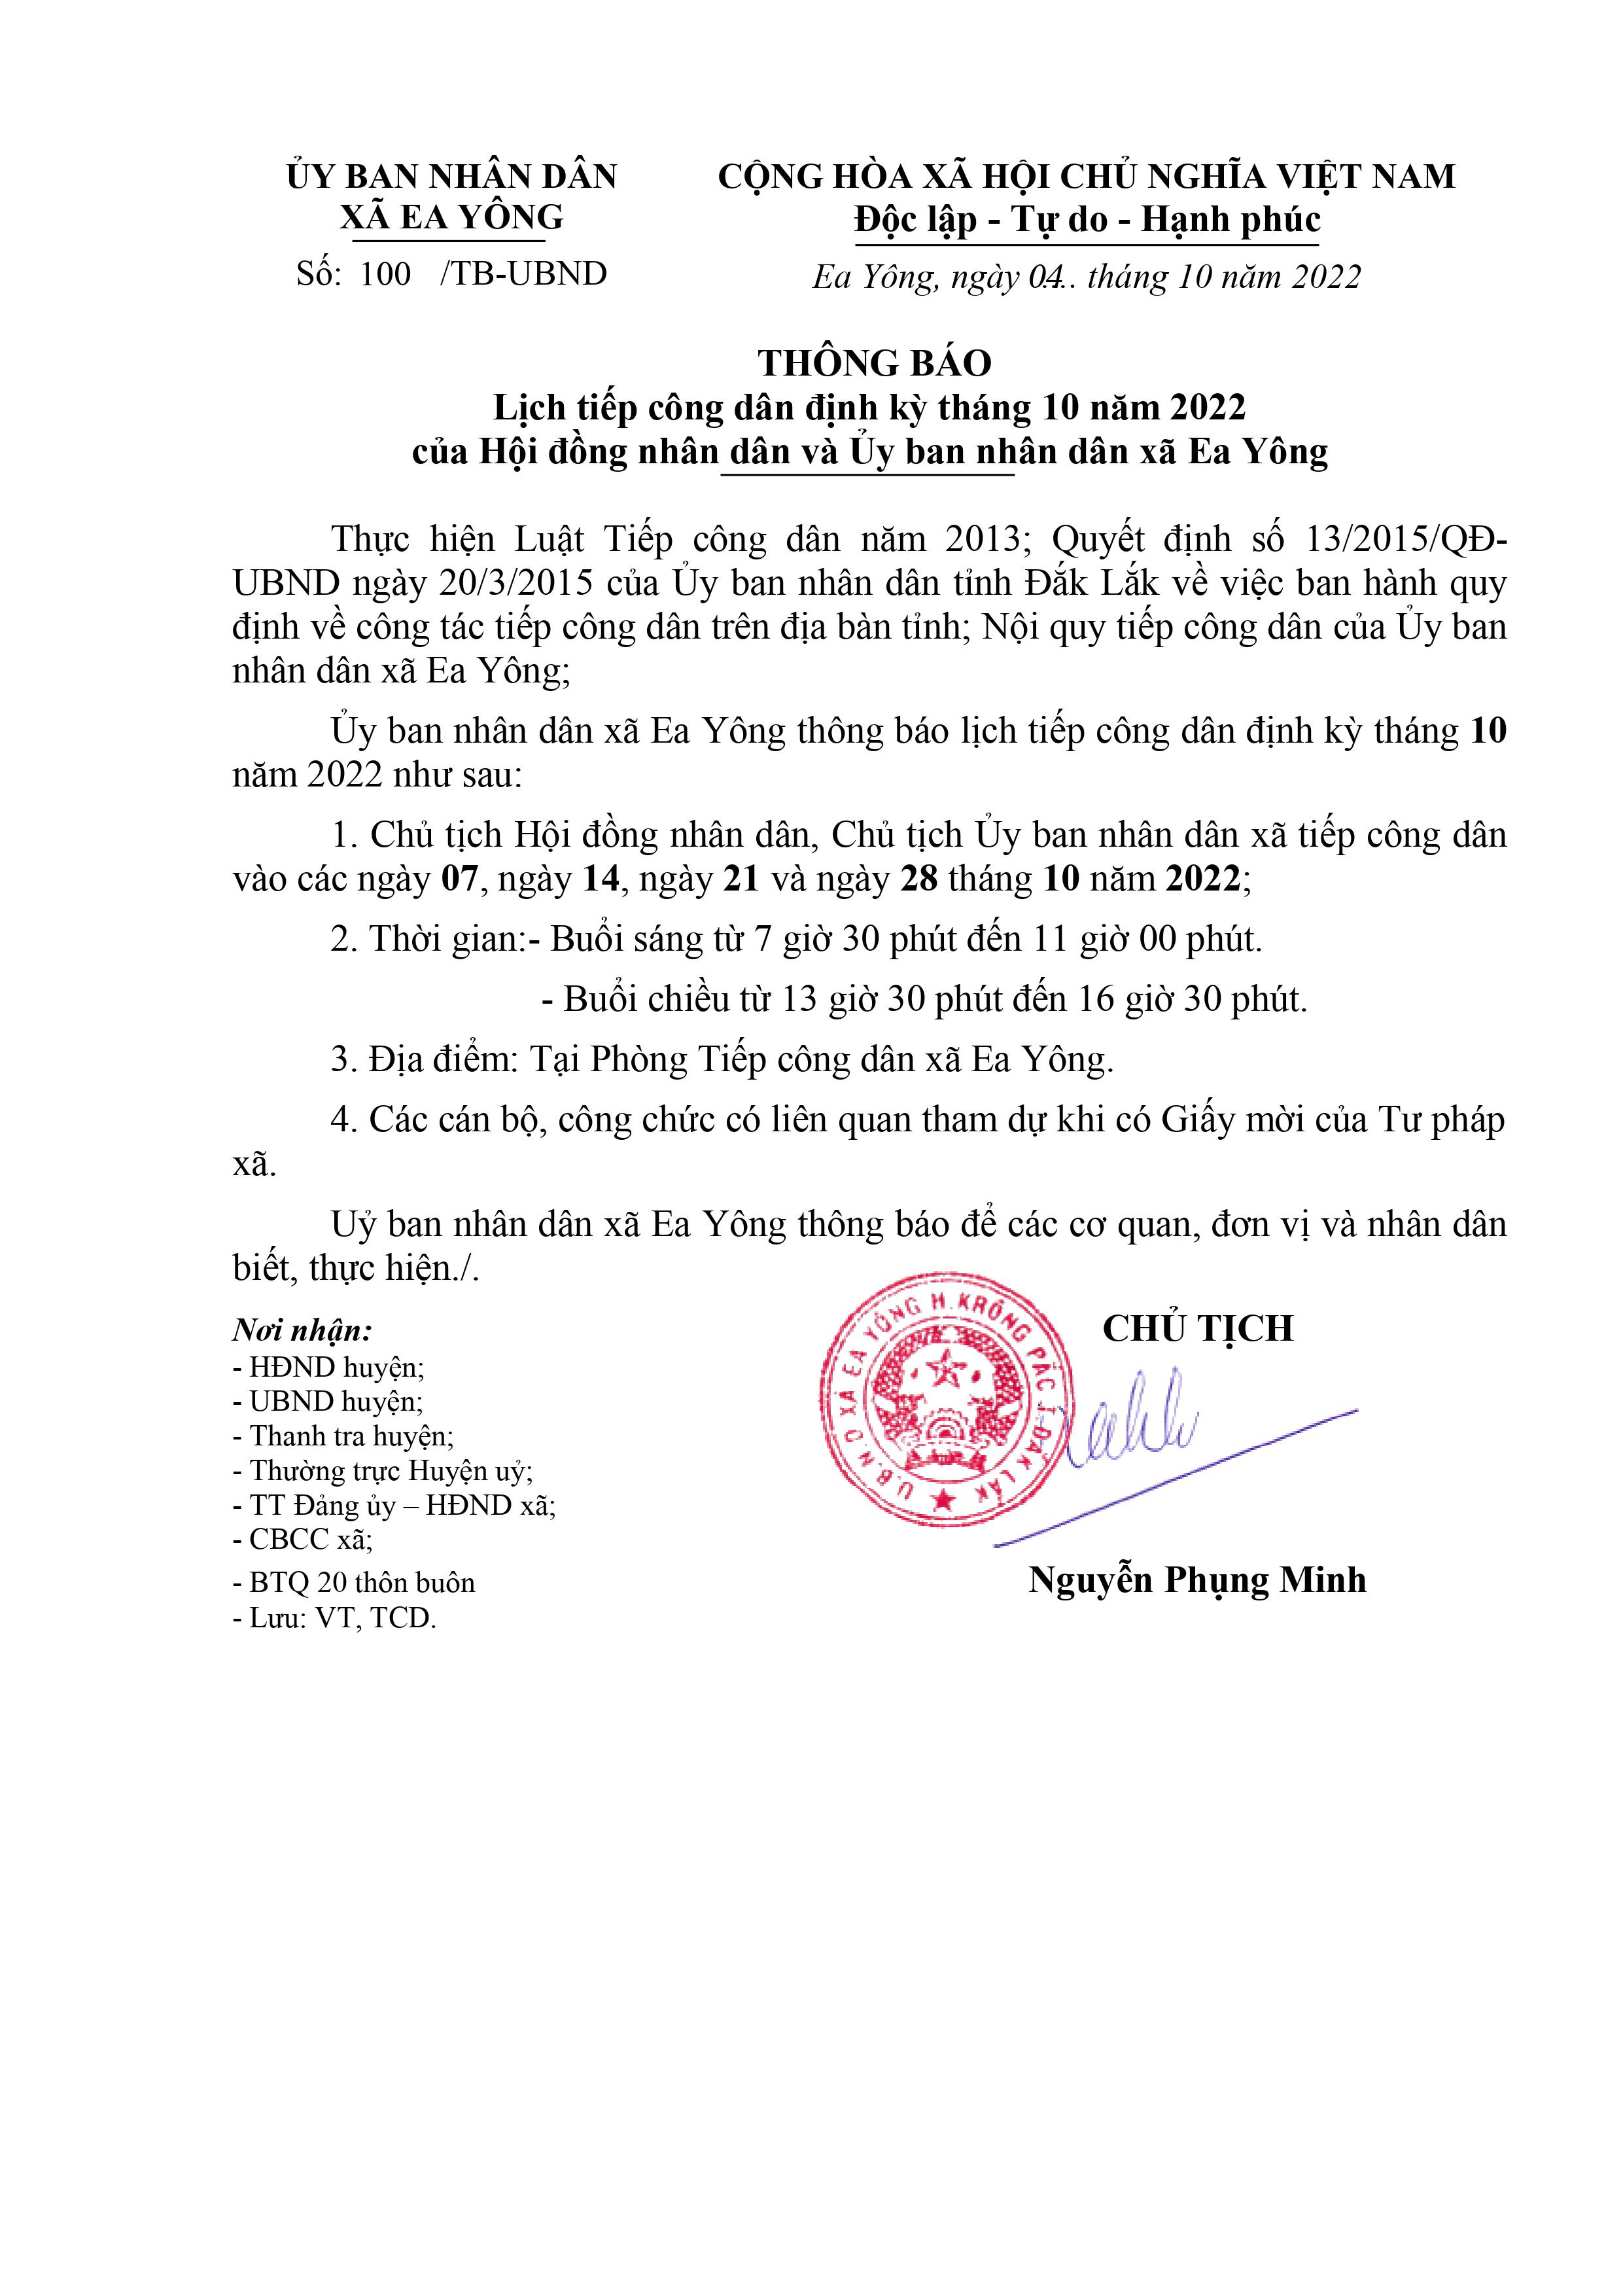  Lịch tiếp công dân định kỳ tháng 10 năm 2022 của Hội đồng nhân dân và Ủy ban nhân dân xã Ea Yông